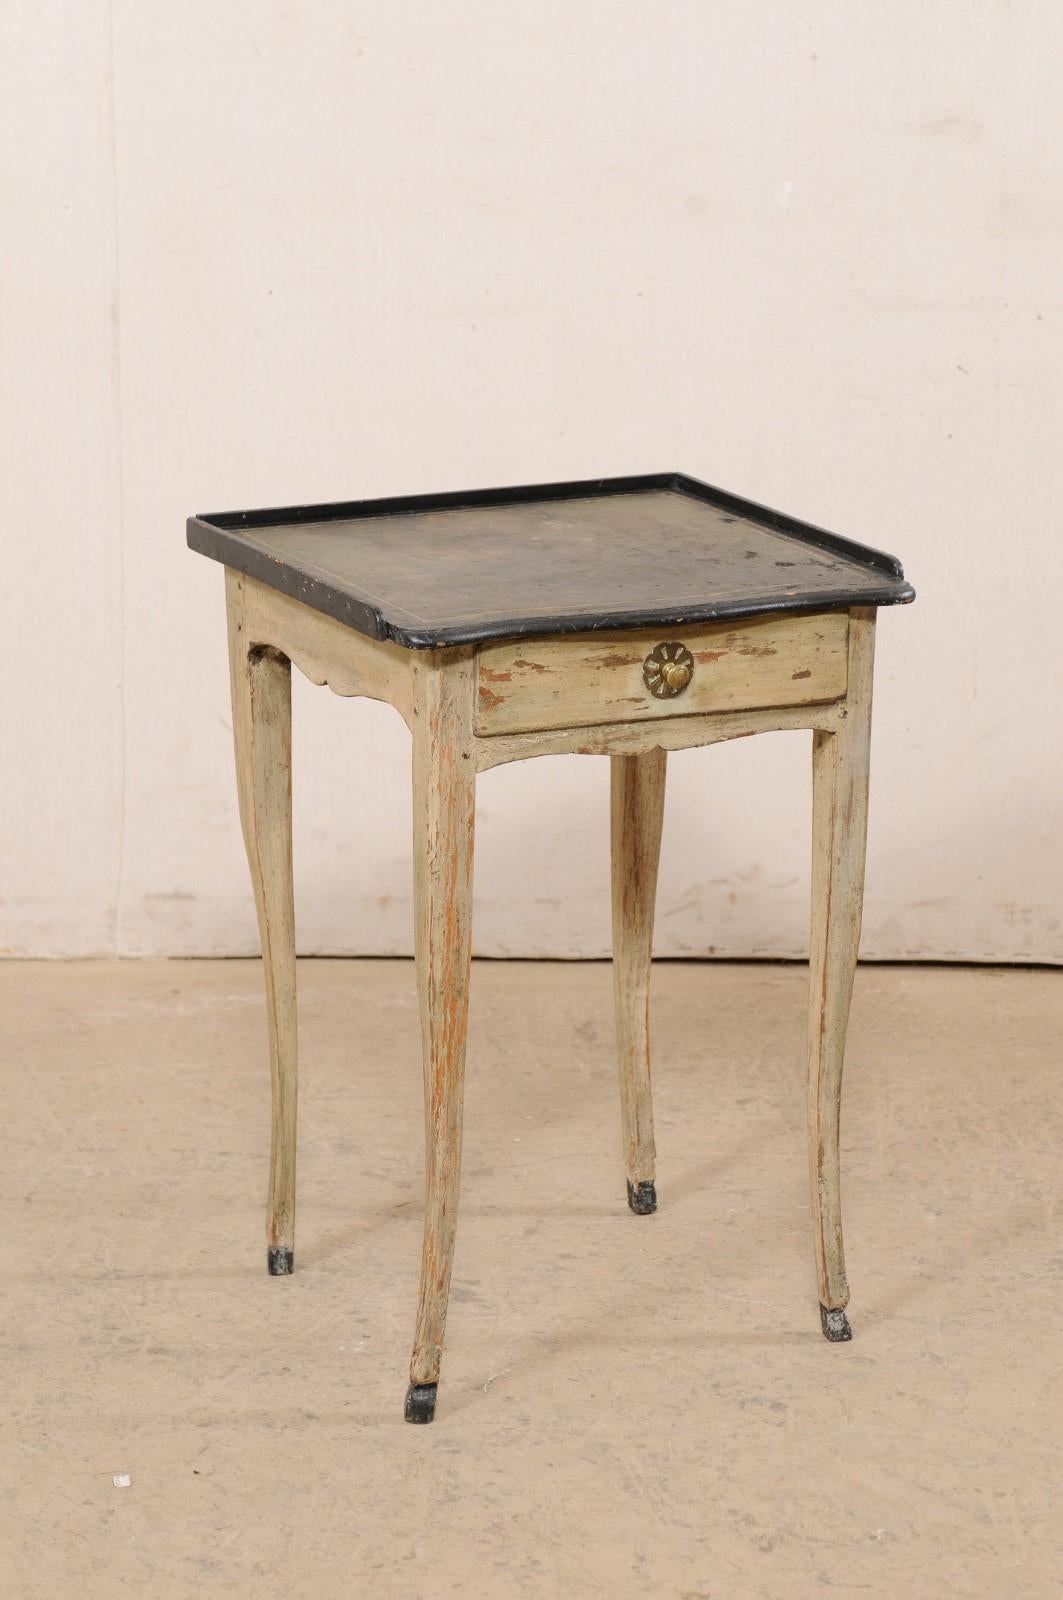 Une petite table d'appoint française en bois avec un seul tiroir et un dessus en cuir, du début du 19ème siècle. Cette table d'appoint ancienne de France a conservé son plateau d'origine en cuir noir et vert, qui est entouré d'une lèvre en relief